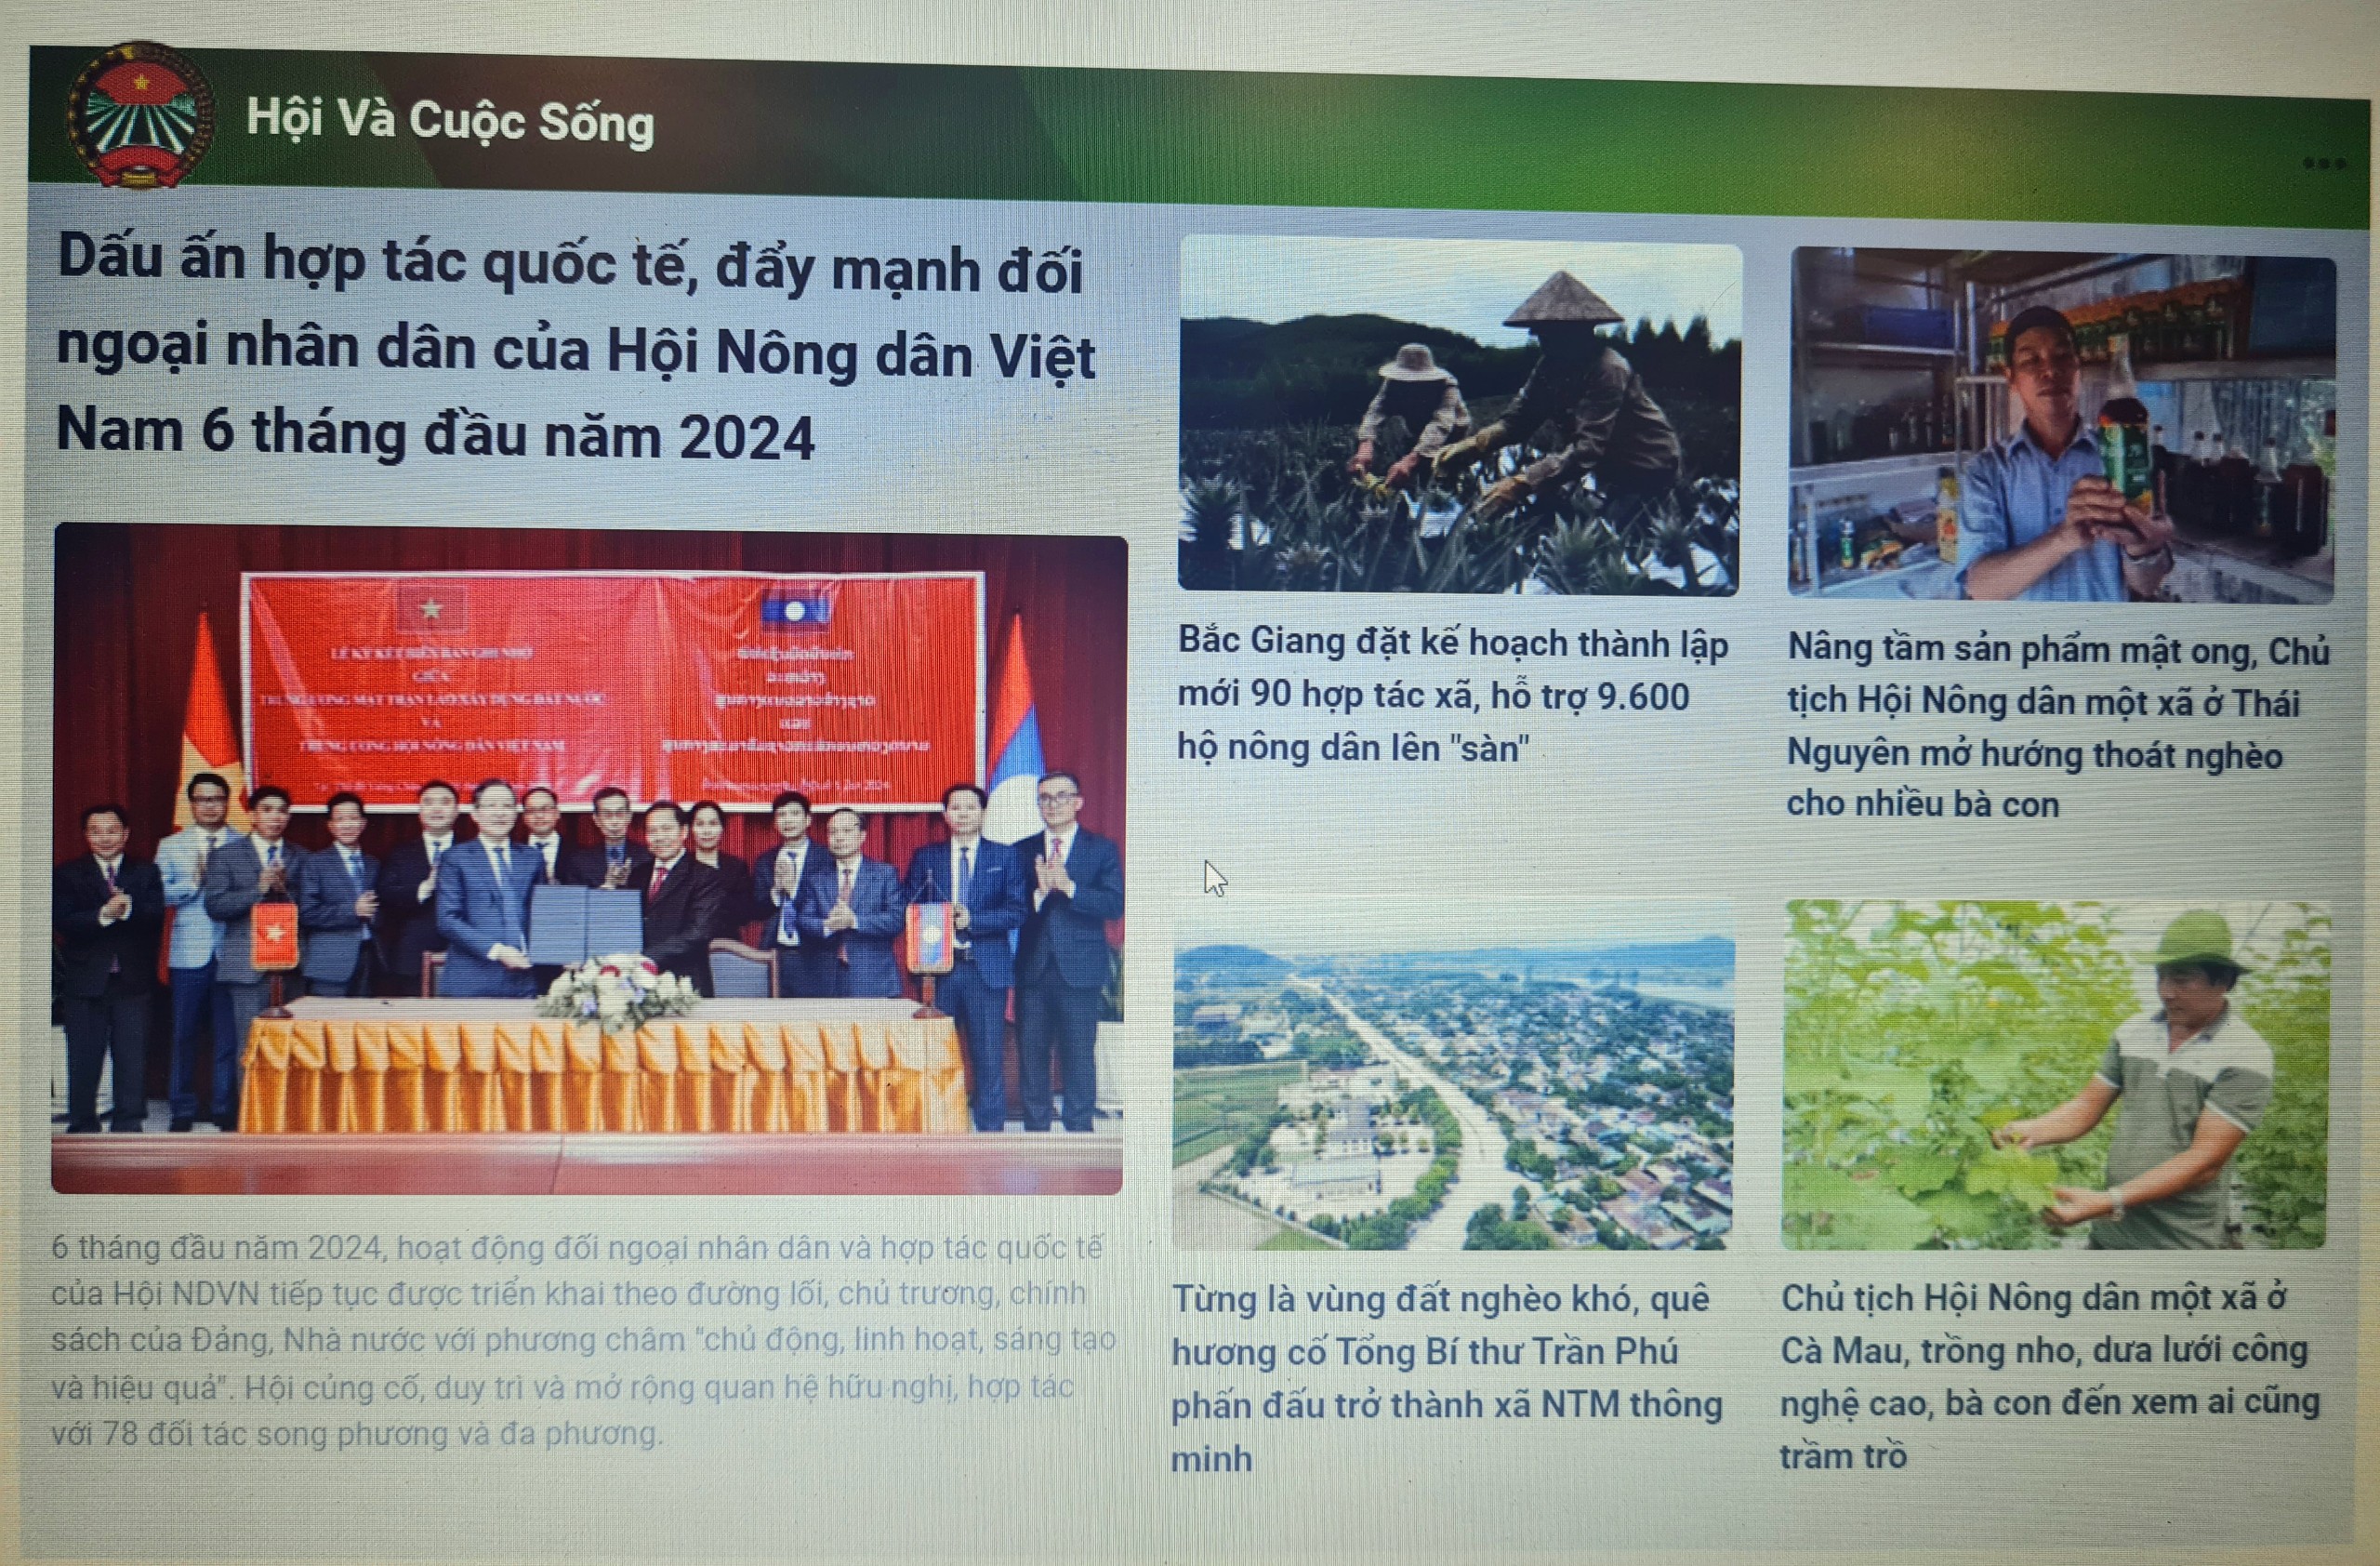 Mời đọc và ủng hộ chuyên mục "Hội và Cuộc sống" trên Báo điện tử Dân Việt- Ảnh 1.